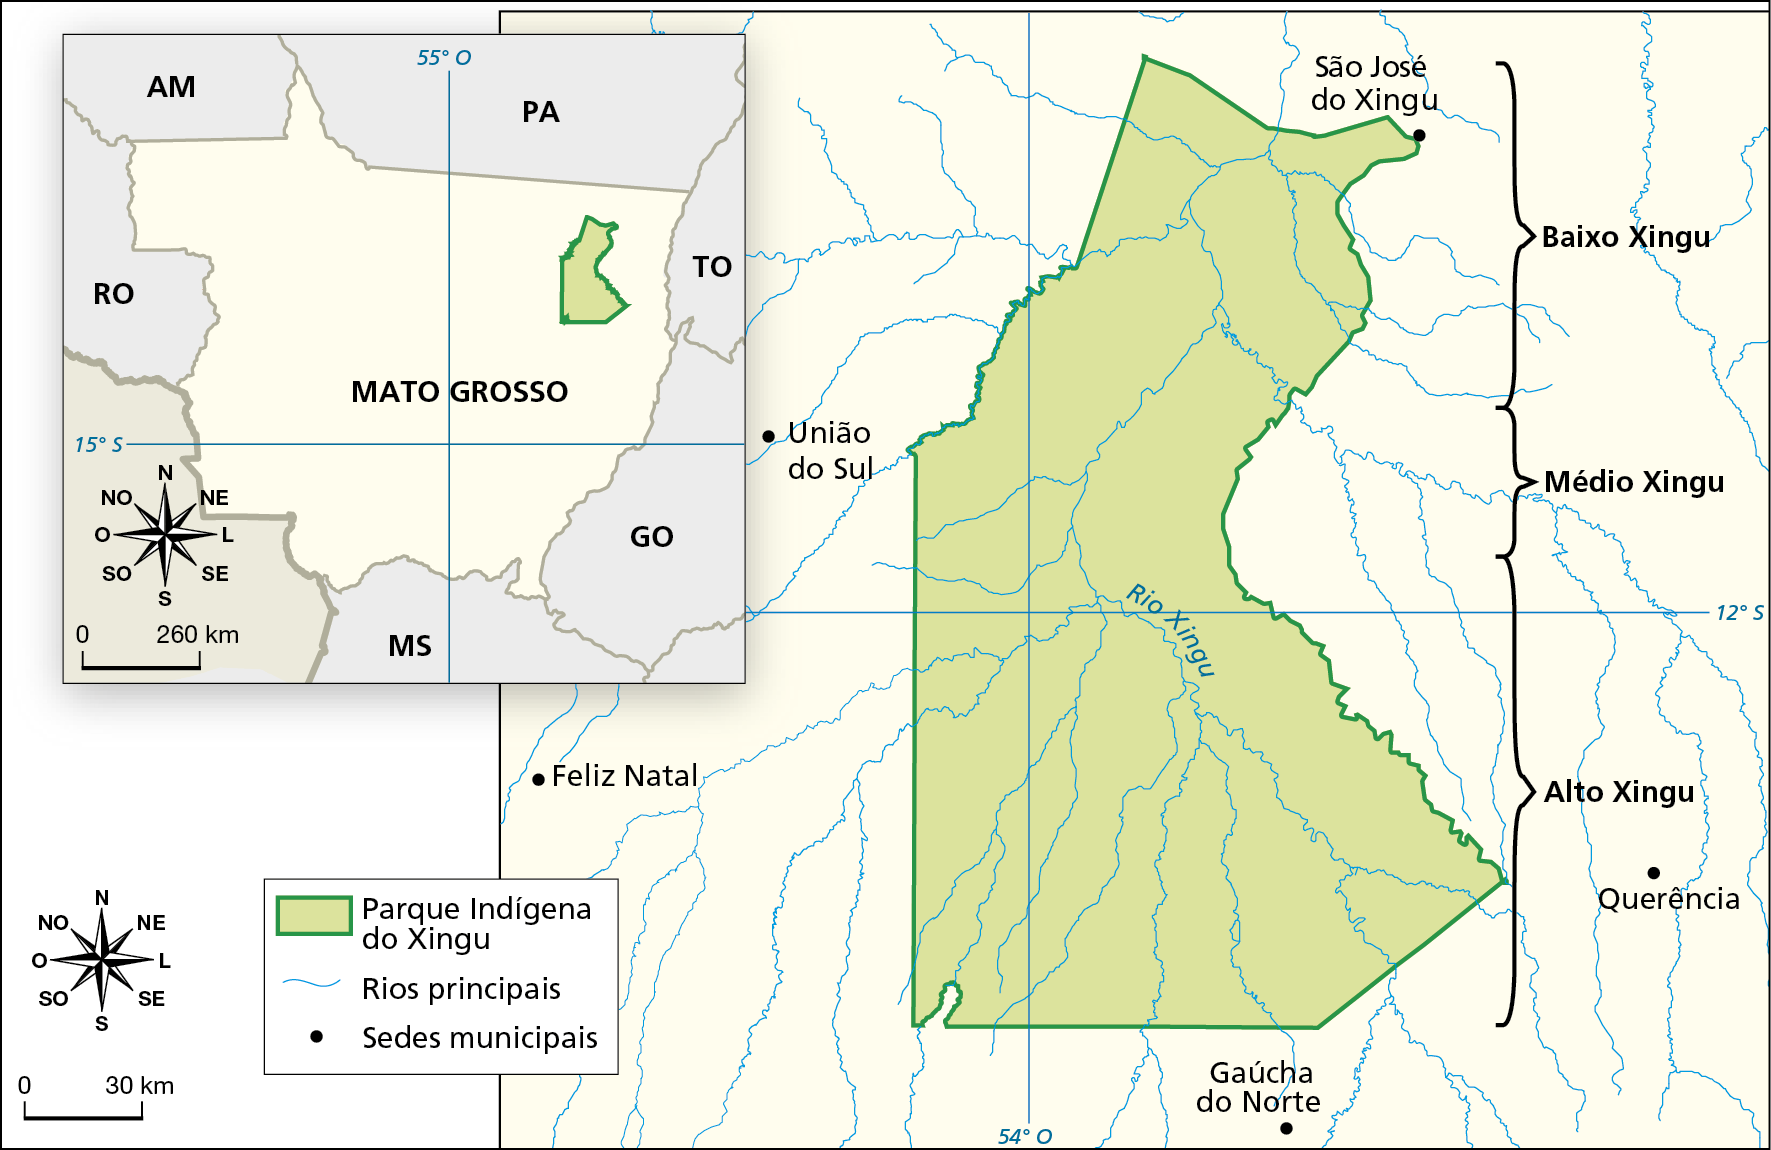 Mapa. Parque indígena do Xingu. Mapa dos limites e das partes que compõem o Parque Indígena do Xingu. À esquerda, há um mapa do estado de Mato Grosso com a localização do Parque, que está na porção sudeste do estado, próximo à divisa de Mato Grosso com os estados do Pará e de Tocantins. À direita, no mapa principal, há o traçado dos limites do parque com linha verde e o parque está colorido em verde-claro. É atravessado pelo rio Xingu e seus afluentes. O Parque é dividido em 3 partes: Baixo Xingu: porção mais ao norte, mais próxima da cidade São José do Xingu. Médio Xingu: porção do parque que tem a leste a cidade de União do Sul. Alto Xingu: porção mais ao sul, mais próxima às cidades de Gaúcha do Norte, ao sul, e Querência, a leste. No centro do parque, destaque para o percurso do Rio Xingu e seus afluentes. Sedes municipais na área representada, que engloba o Parque e área do entorno: São José do Xingu ao norte, Feliz Natal e União do Sul a oeste, Gaúcha do Norte ao sul e Querência a leste. À esquerda e abaixo, rosa dos ventos e escala de 0 a 30 quilômetros.